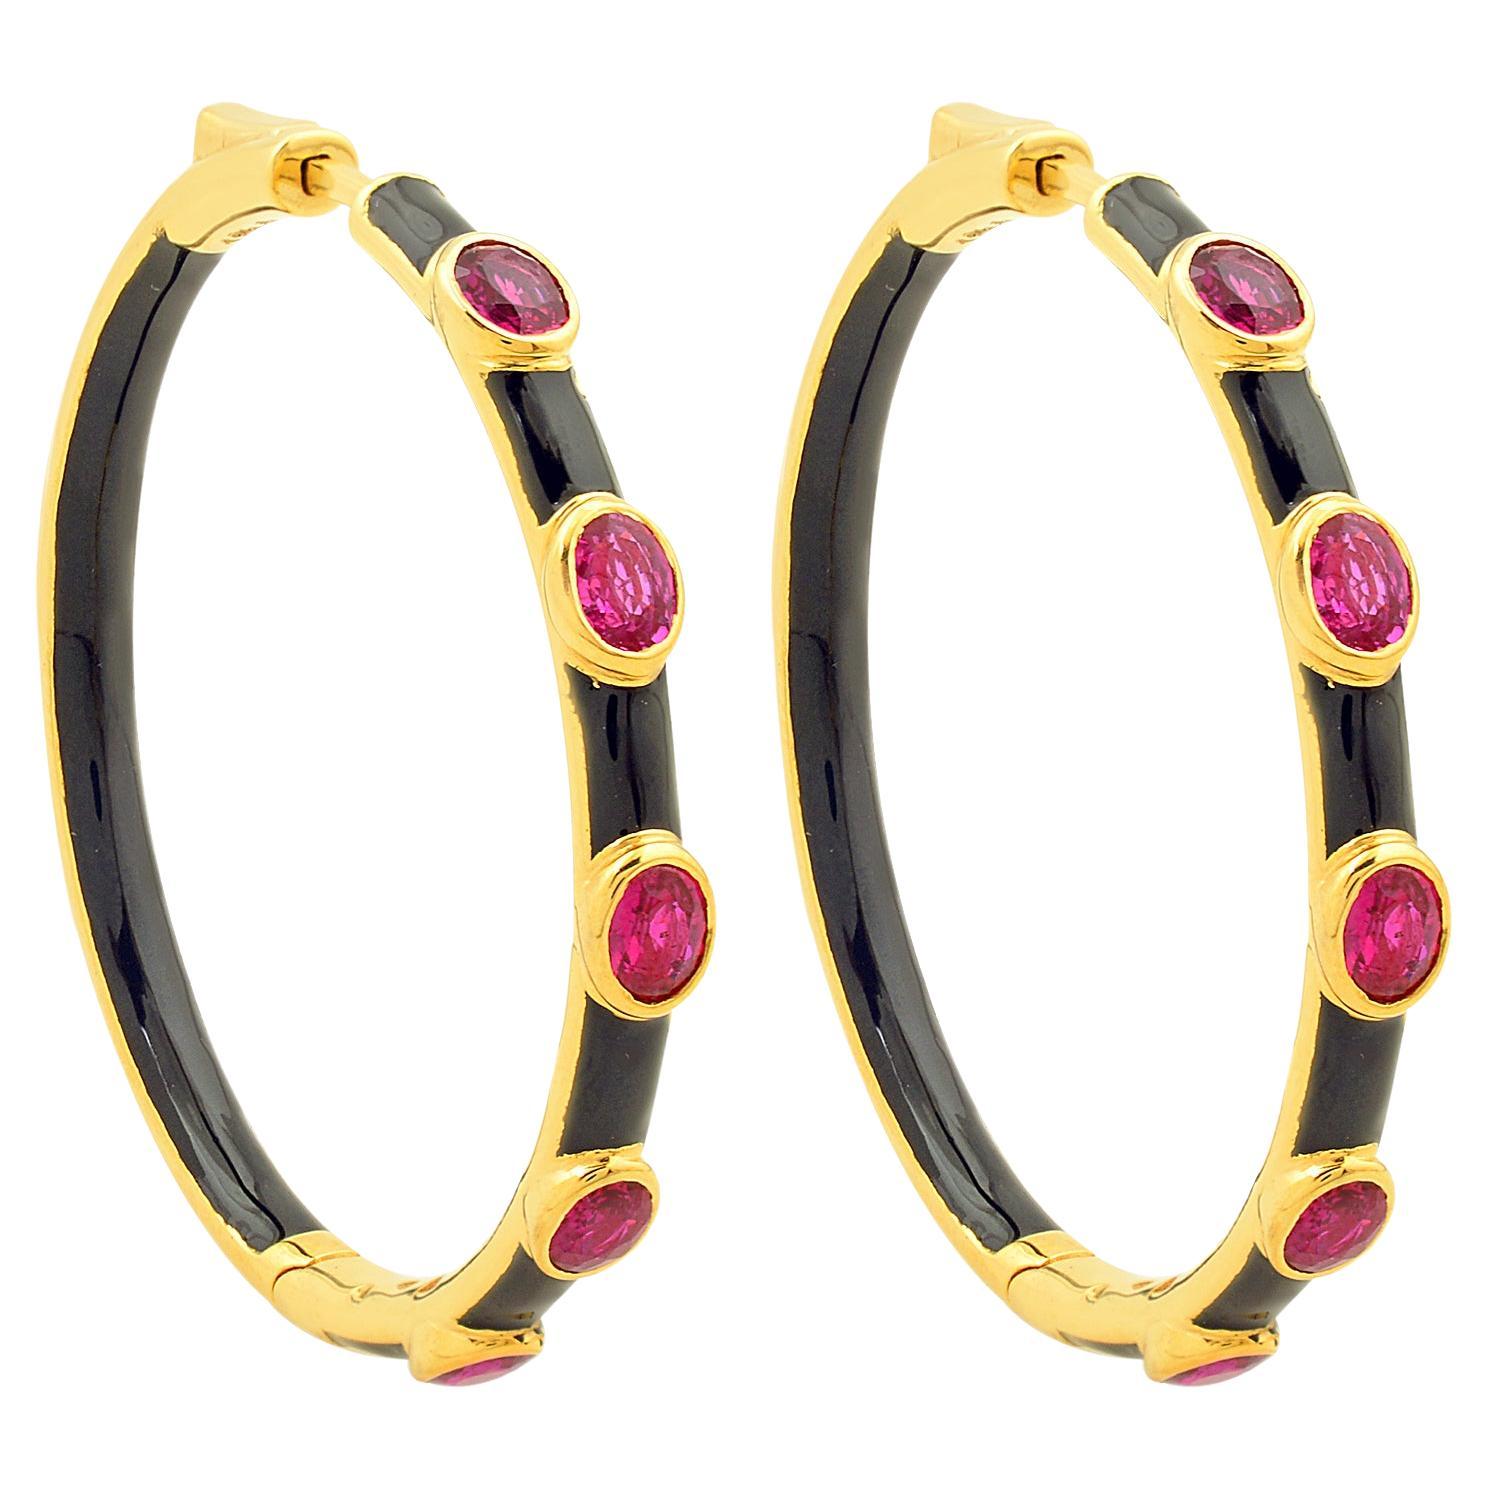 2.24 Carat Oval Ruby Gemstone Hoop Earrings Solid 18k Yellow Gold Enamel Jewelry